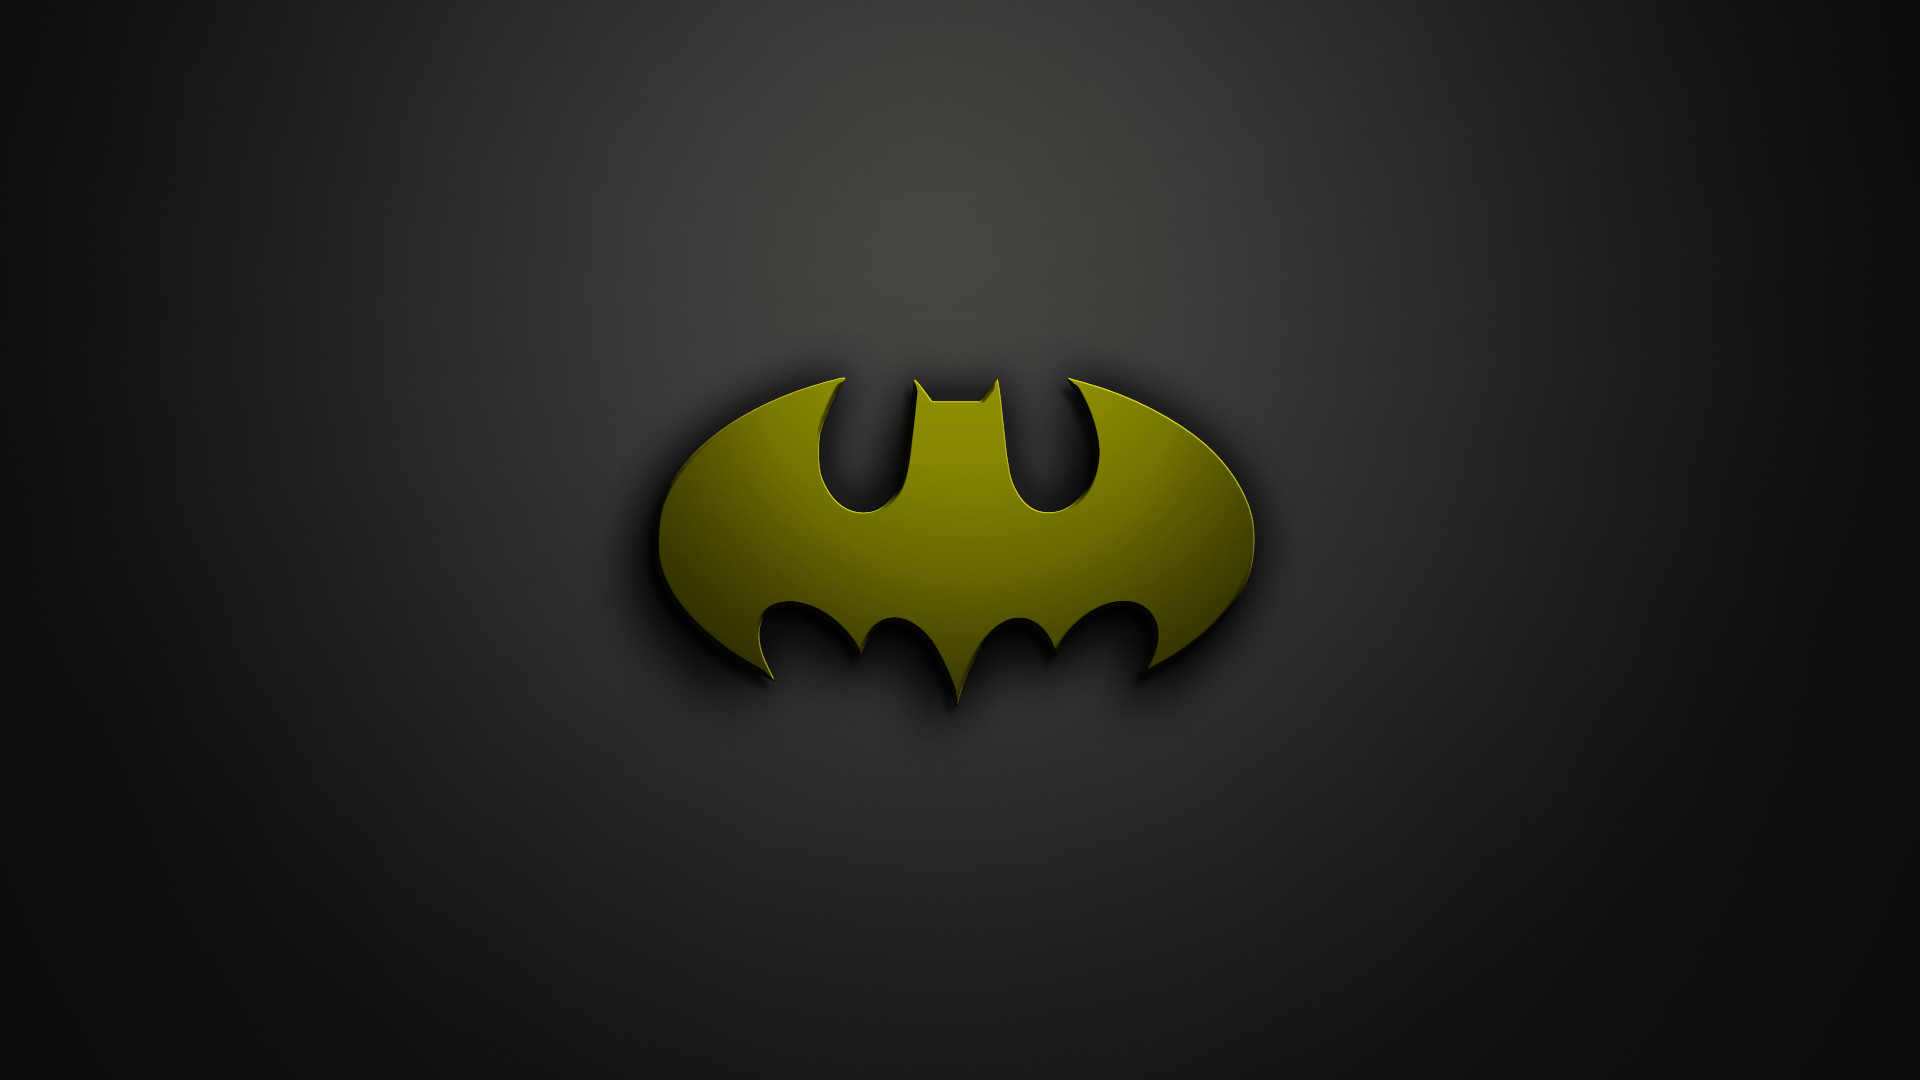 Batman Symbol Phone Wallpaper Batman logo wallpaper